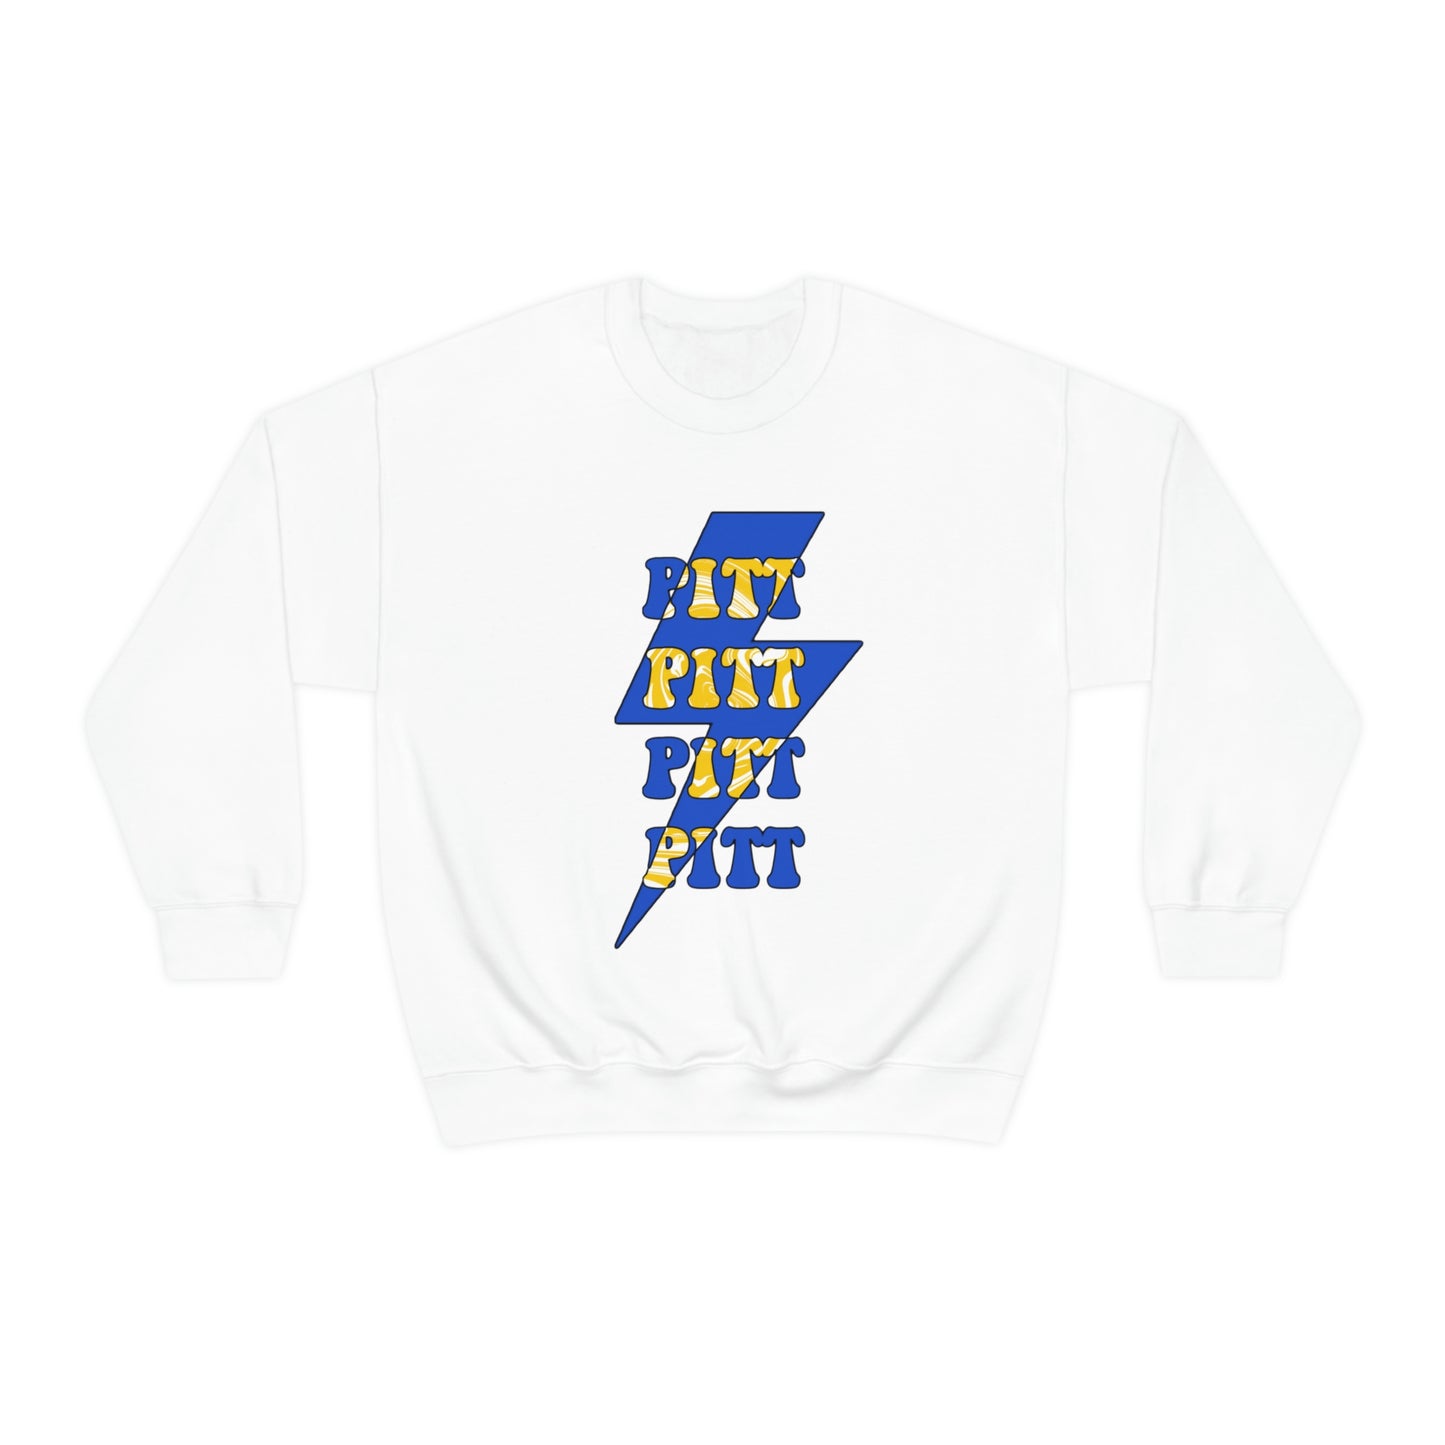 University of Pittsburgh Sweatshirt